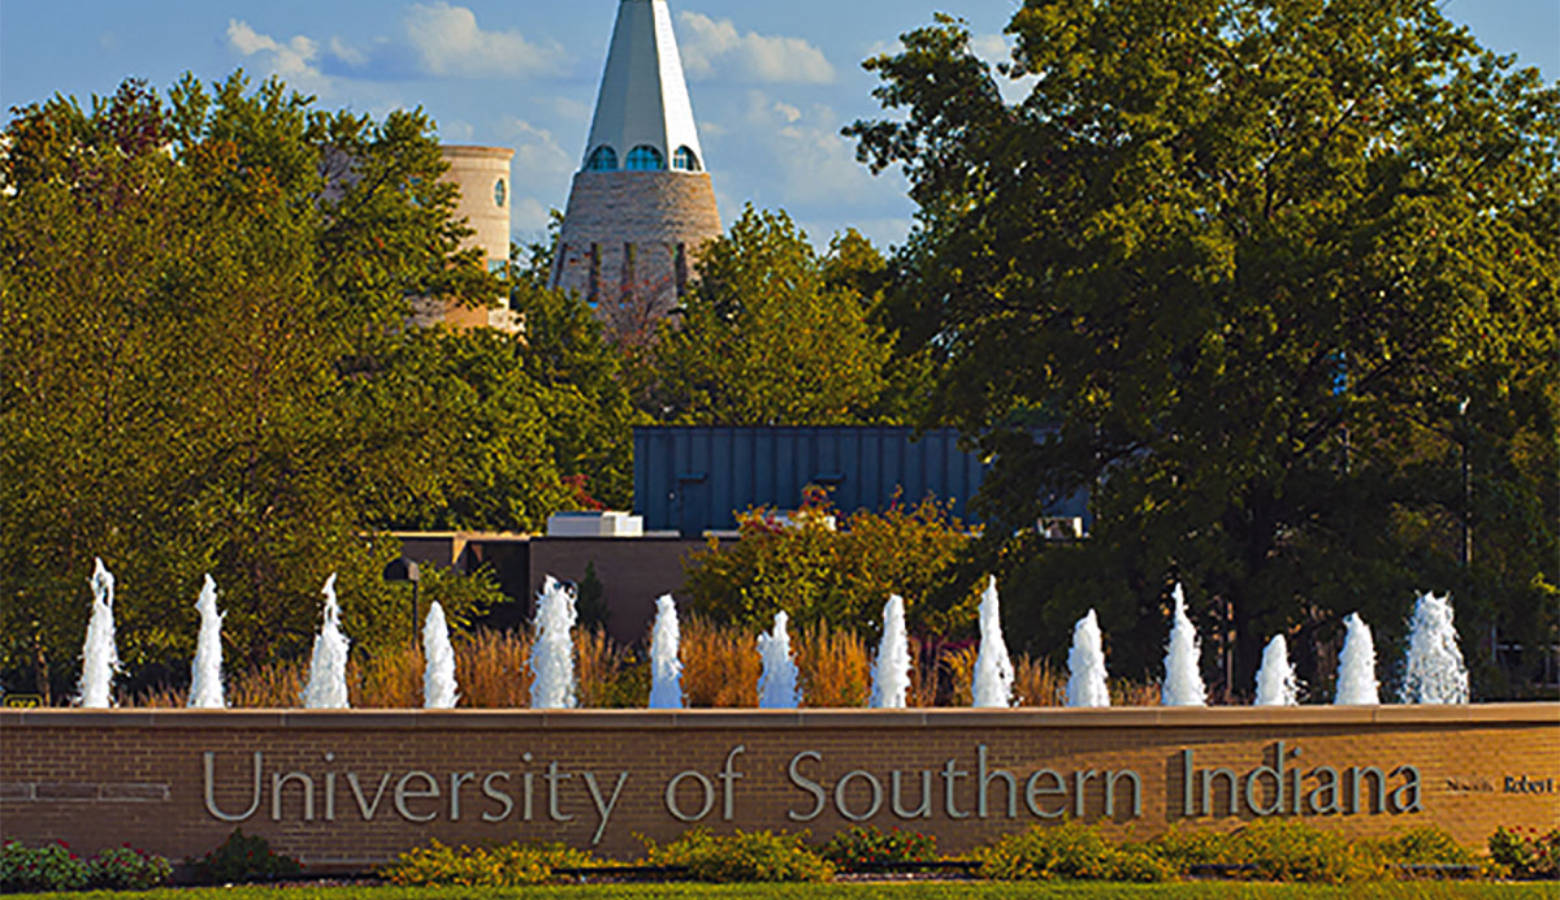 (Photo courtesy of University of Southern Indiana)